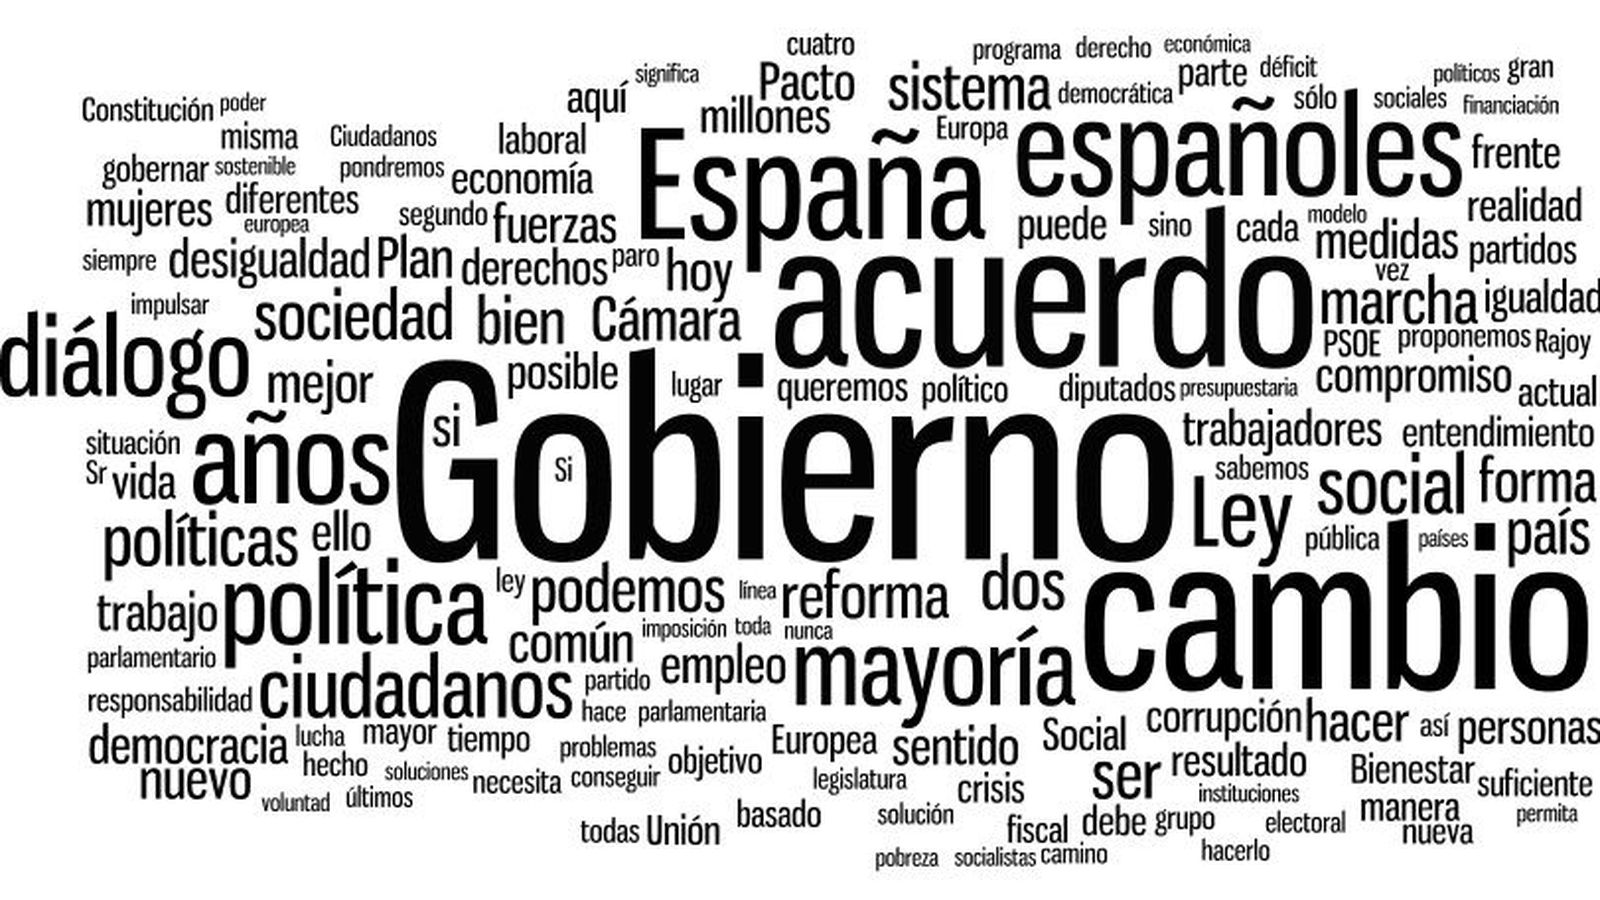 Foto: El discurso de Pedro Sánchez en forma de nube de palabras. (EC)